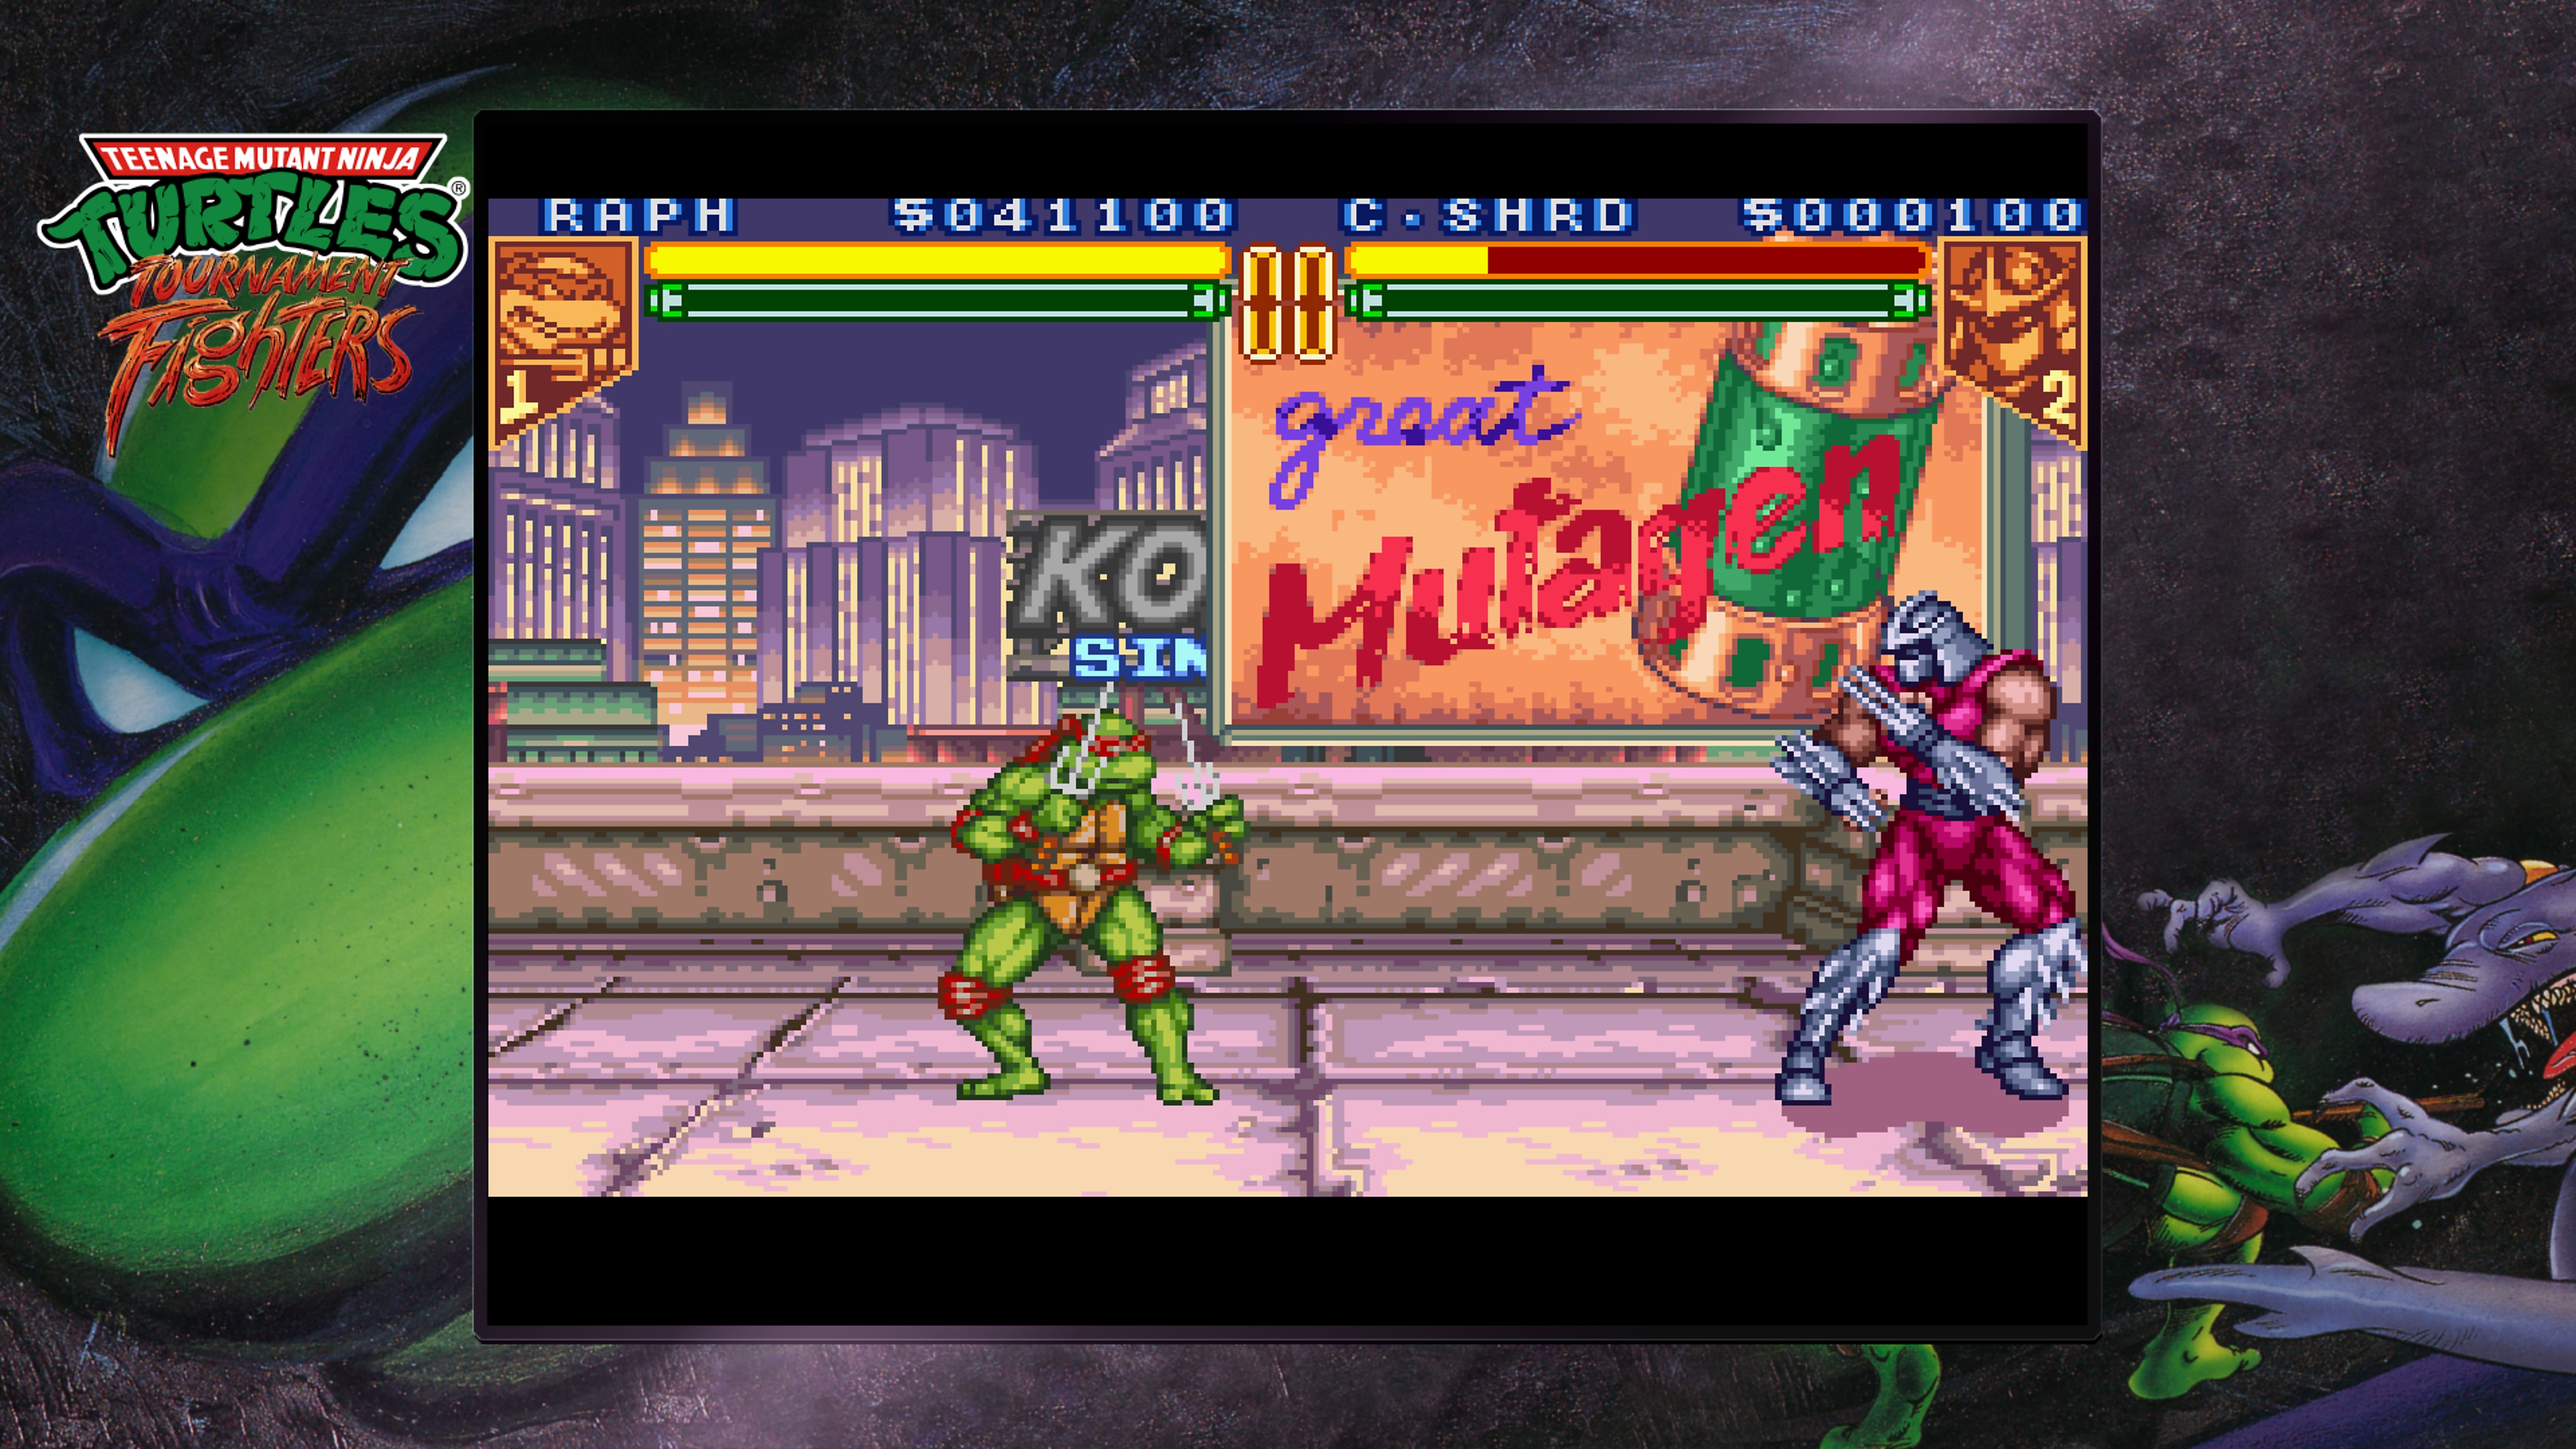 Teenage Mutant Ninja Turtles Collection – Tournament Fighters – skjermbilde som viser Raphael kjempe mot Shredder på toppen av et tak